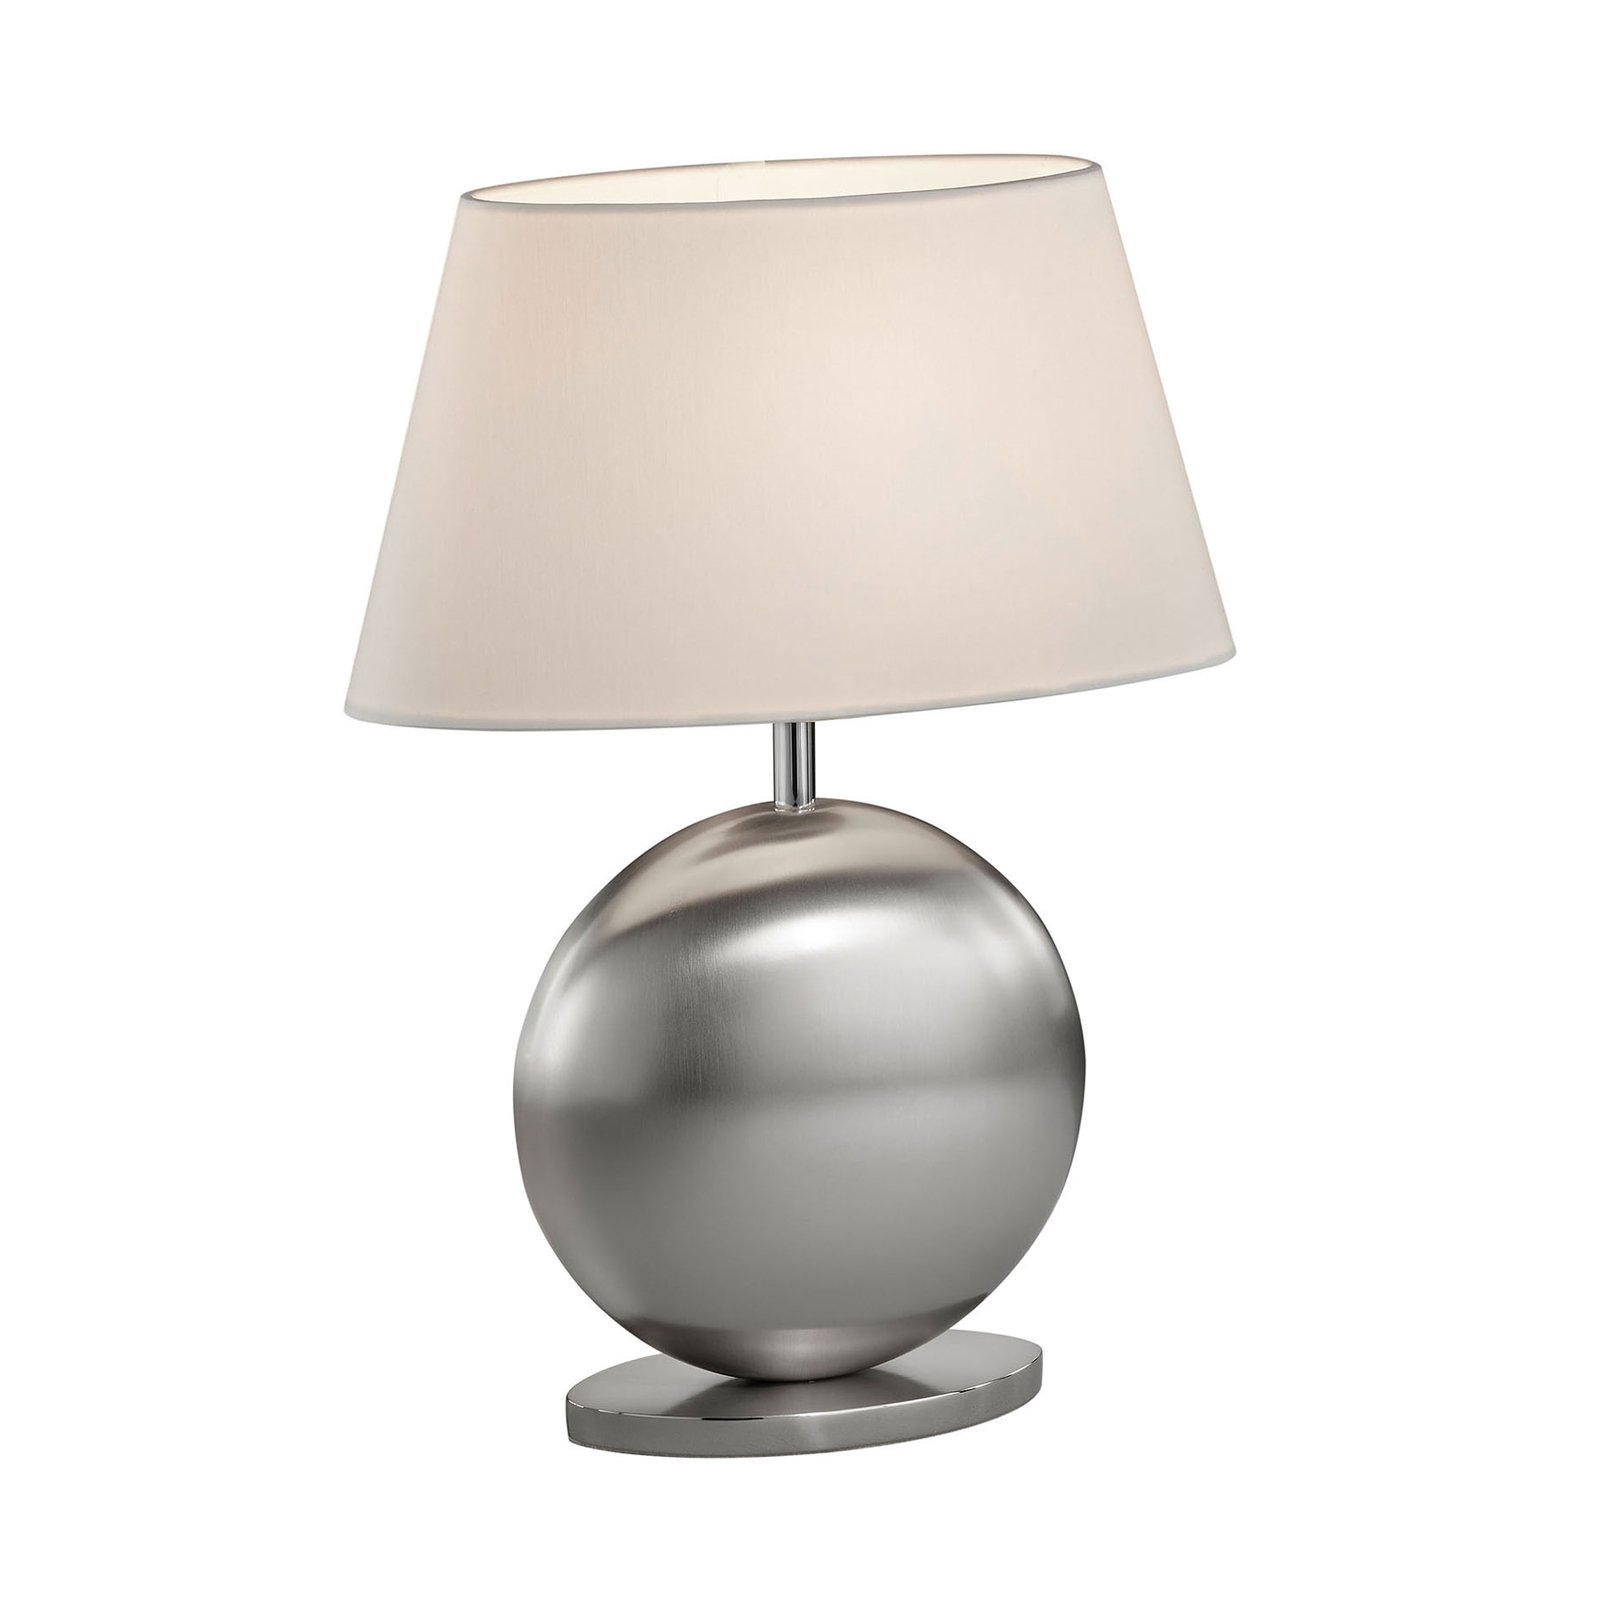 BANKAMP Asolo stolní lampa, bílá/nikl, výška 41cm